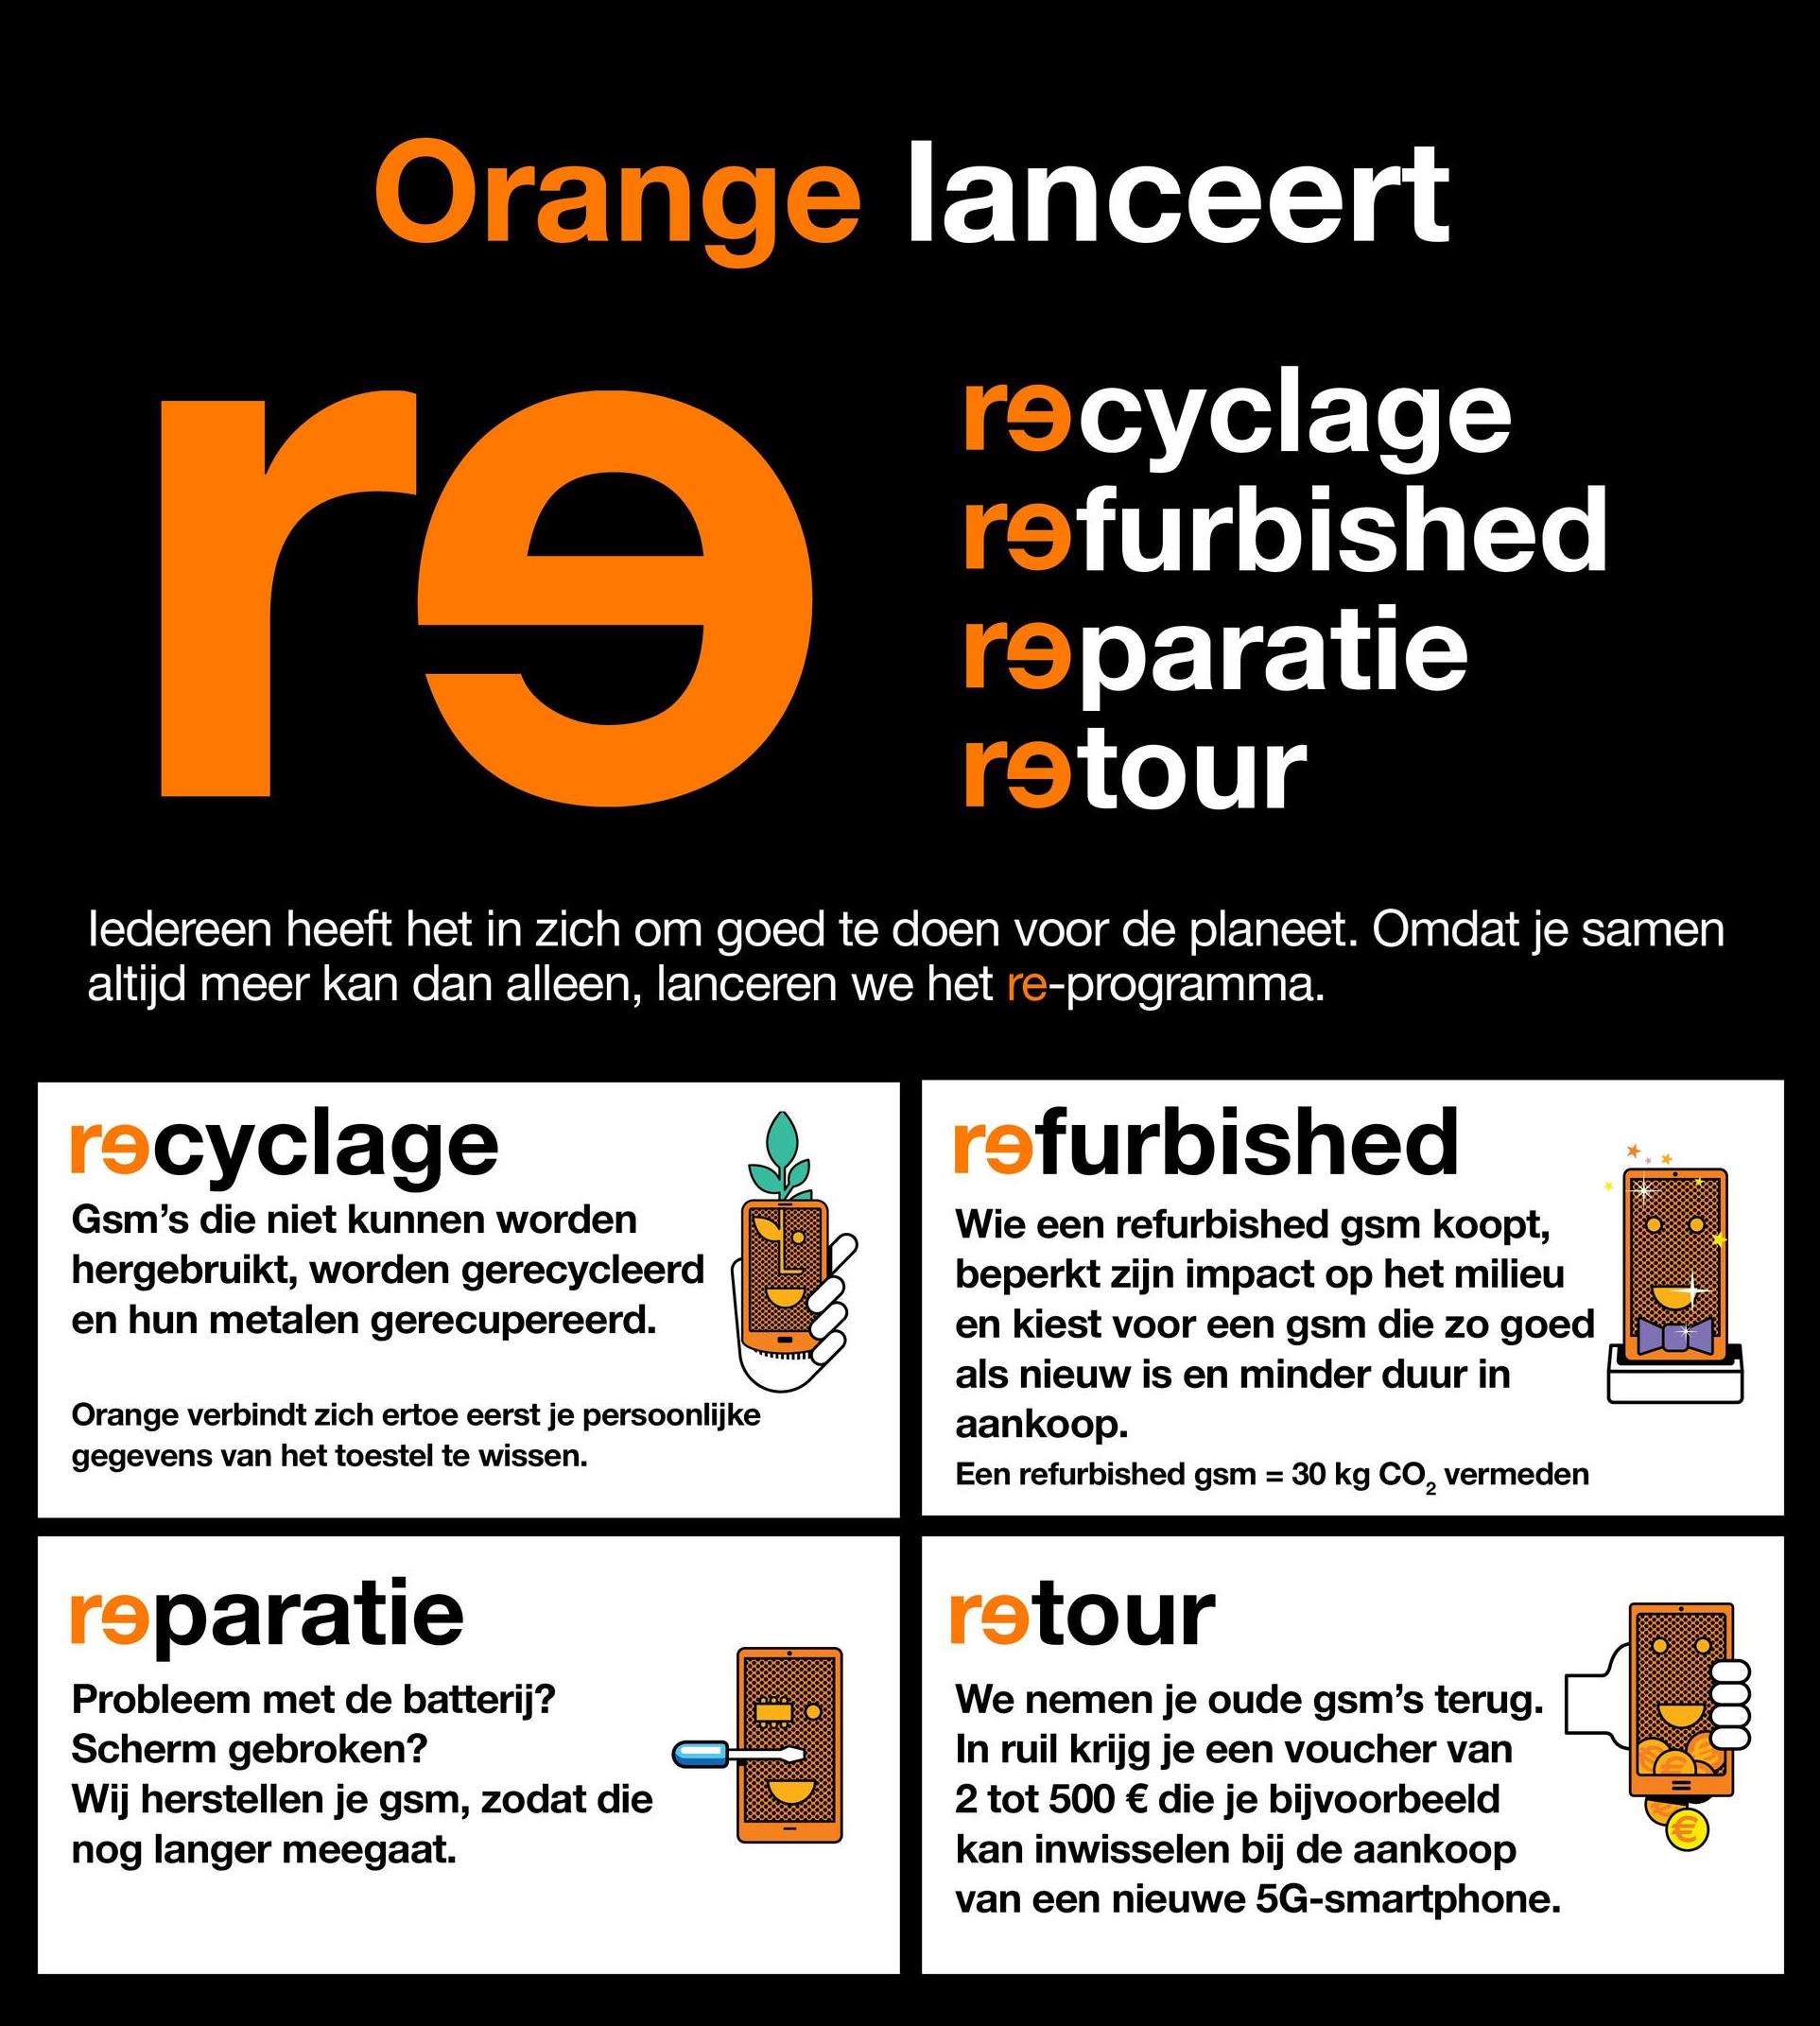 Orange lanceert
ro
recyclage
refurbished
reparatie
retour
ledereen heeft het in zich om goed te doen voor de planeet. Omdat je samen
altijd meer kan dan alleen, lanceren we het re-programma.
recyclage
refurbished
Gsm's die niet kunnen worden
hergebruikt, worden gerecycleerd
en hun metalen gerecupereerd.
Wie een refurbished gsm koopt,
beperkt zijn impact op het milieu
en kiest voor een gsm die zo goed
als nieuw is en minder duur in
aankoop.
Een refurbished gsm = 30 kg CO, vermeden
Orange verbindt zich ertoe eerst je persoonlijke
gegevens van het toestel te wissen.
=
reparatie
retour
Probleem met de batterij?
Scherm gebroken?
Wij herstellen je gsm, zodat die
nog langer meegaat.
op
0000
We nemen je oude gsm's terug.
In ruil krijg je een voucher van
2 tot 500 € die je bijvoorbeeld
kan inwisselen bij de aankoop
van een nieuwe 5G-smartphone.
ADO:
